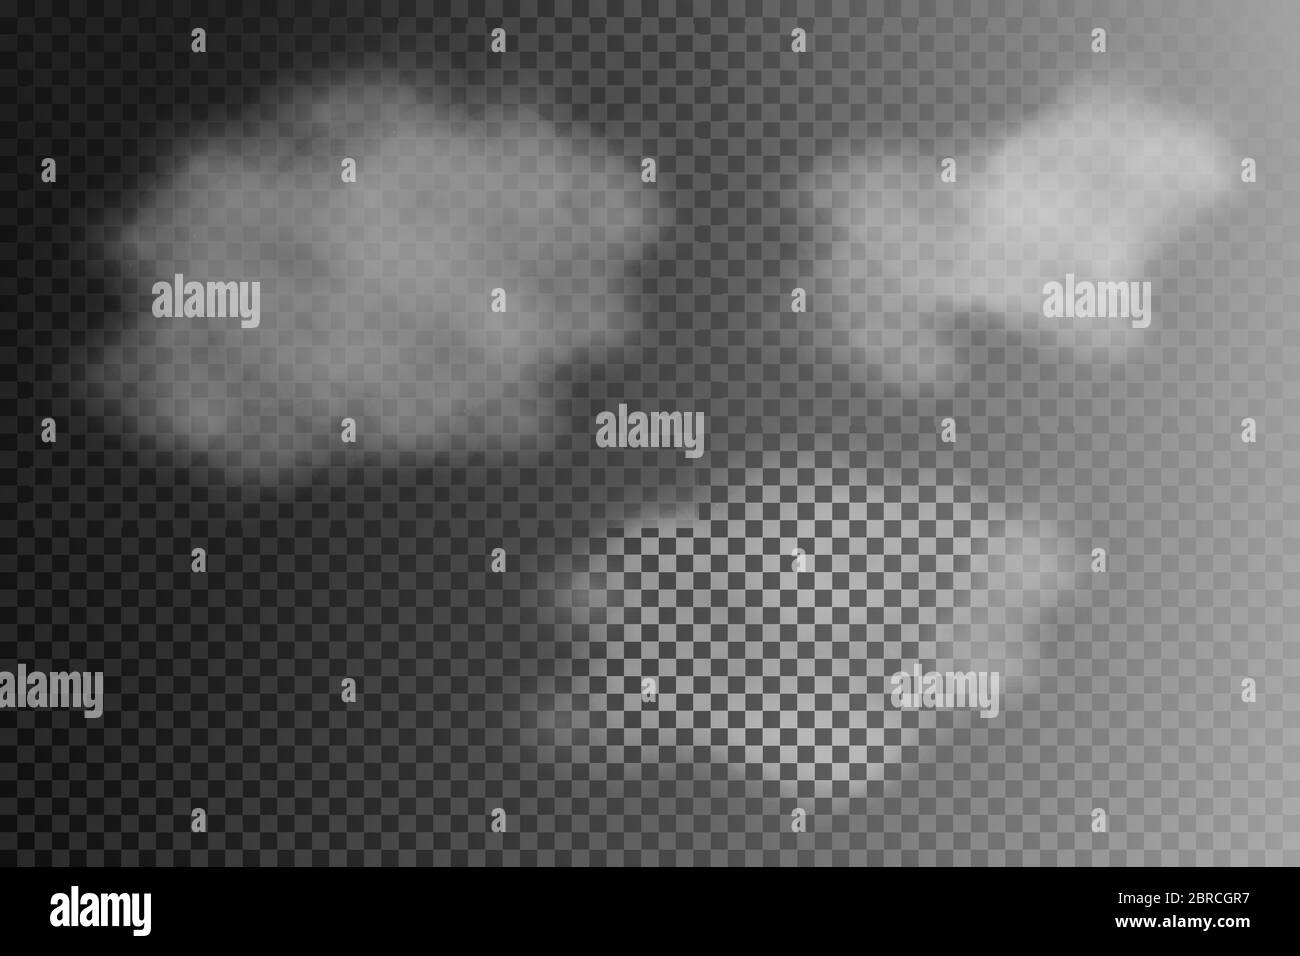 Niebla o humo transparente aislados efecto especial. Vector blanco nubosidad, niebla o niebla de fondo. Ilustración vectorial. Ilustración del Vector